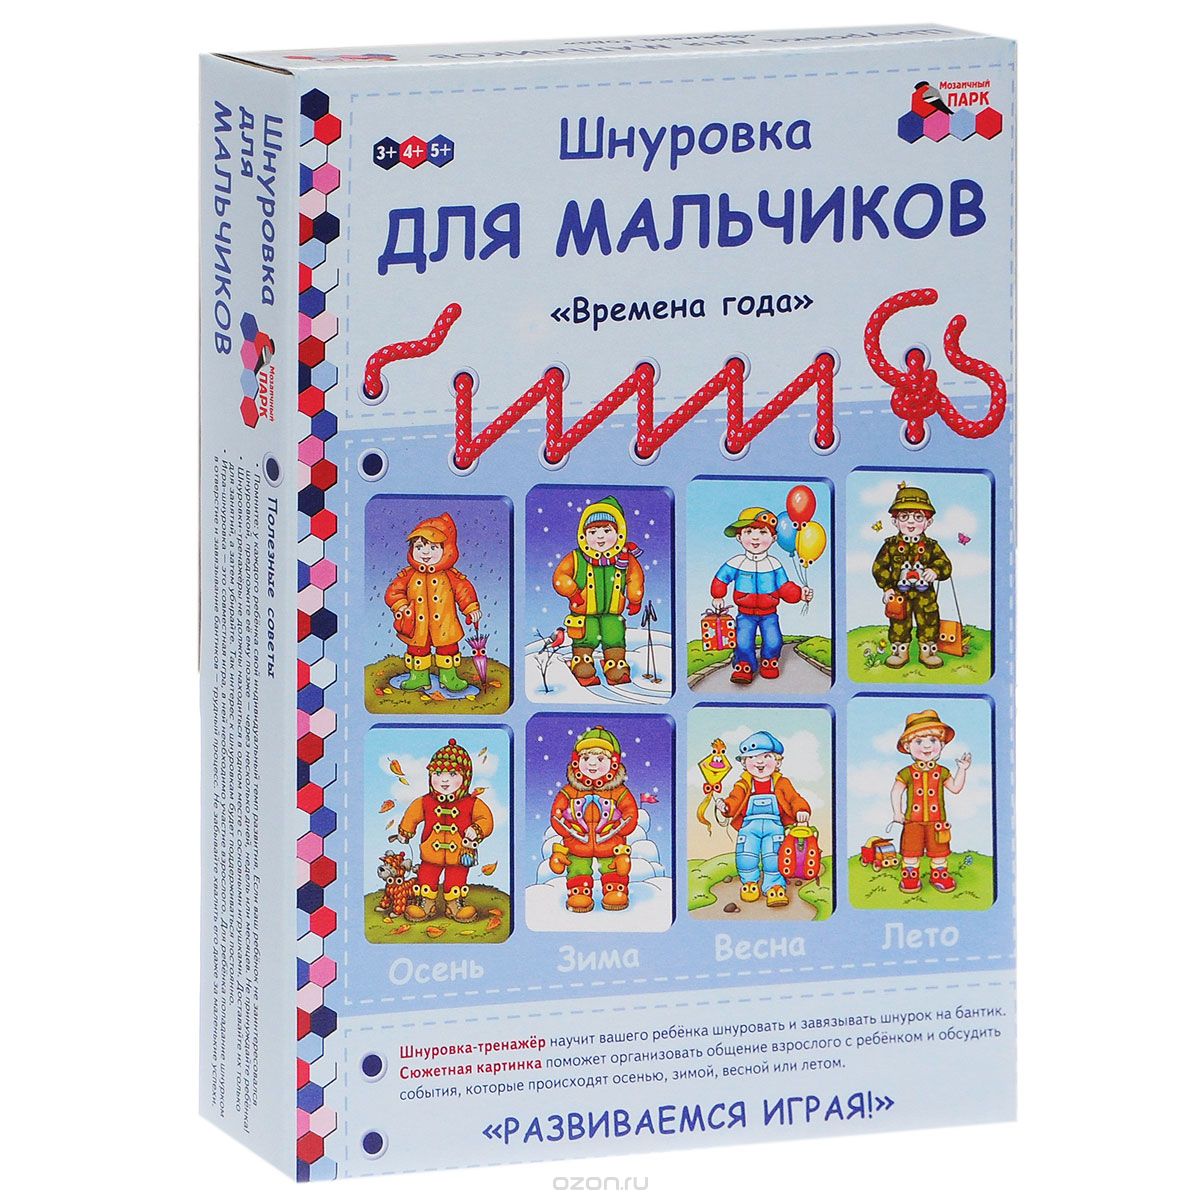 Скачать книгу "Шнуровка для мальчиков "Времена года" (набор из 4 карточек и 24 шнурков), Е. А. Каралашвили, Л. И. Павлова"